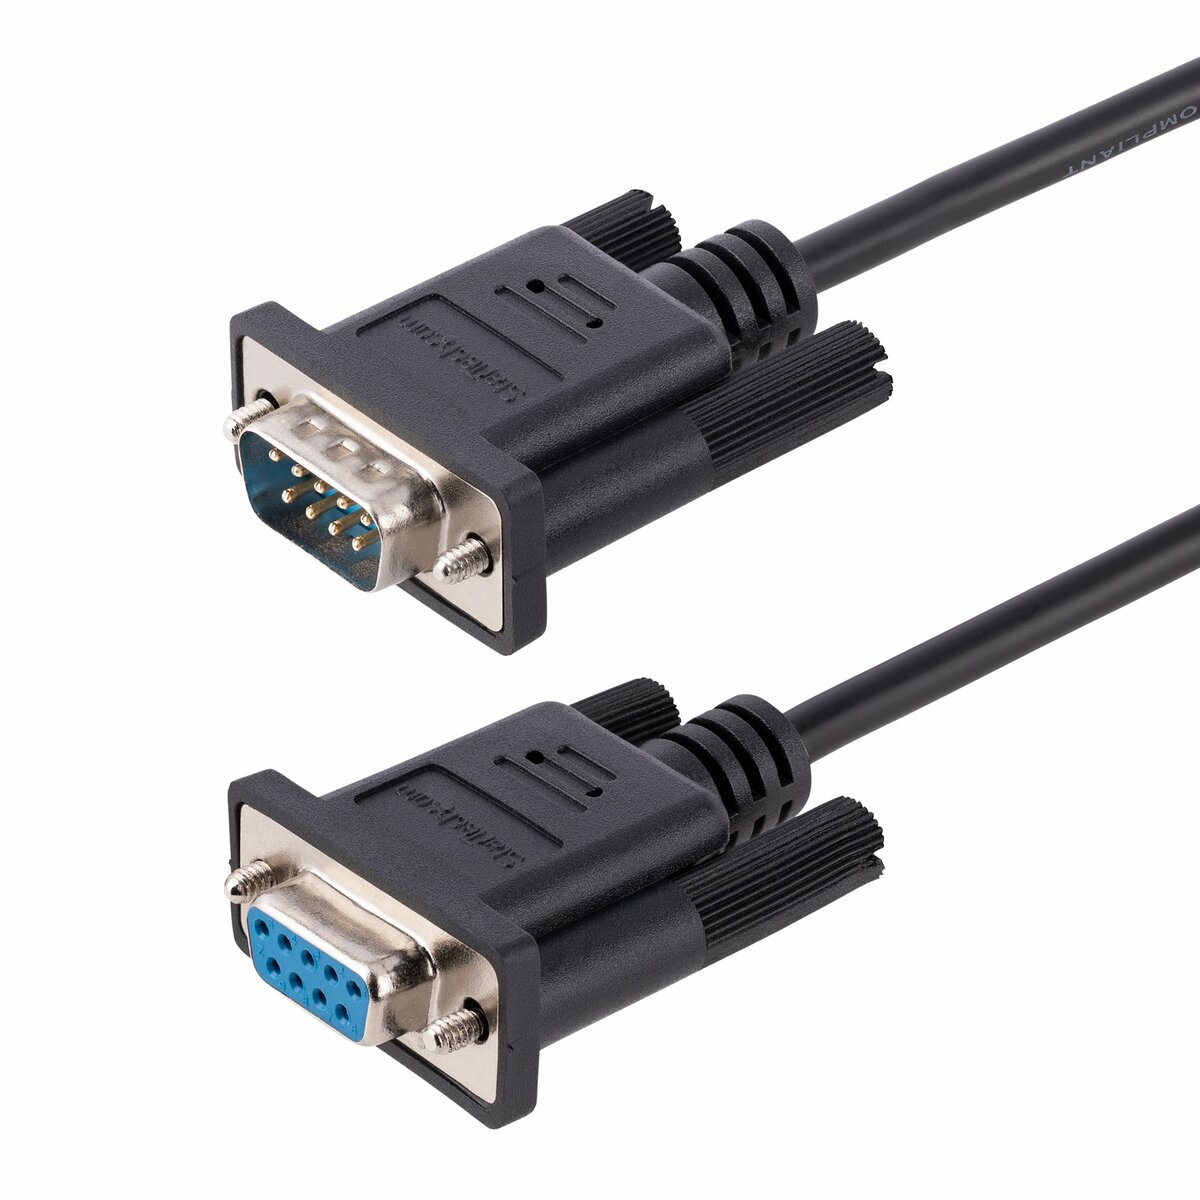 Câble de verrouillage USB 3.1 (connecteurs en métal moulé